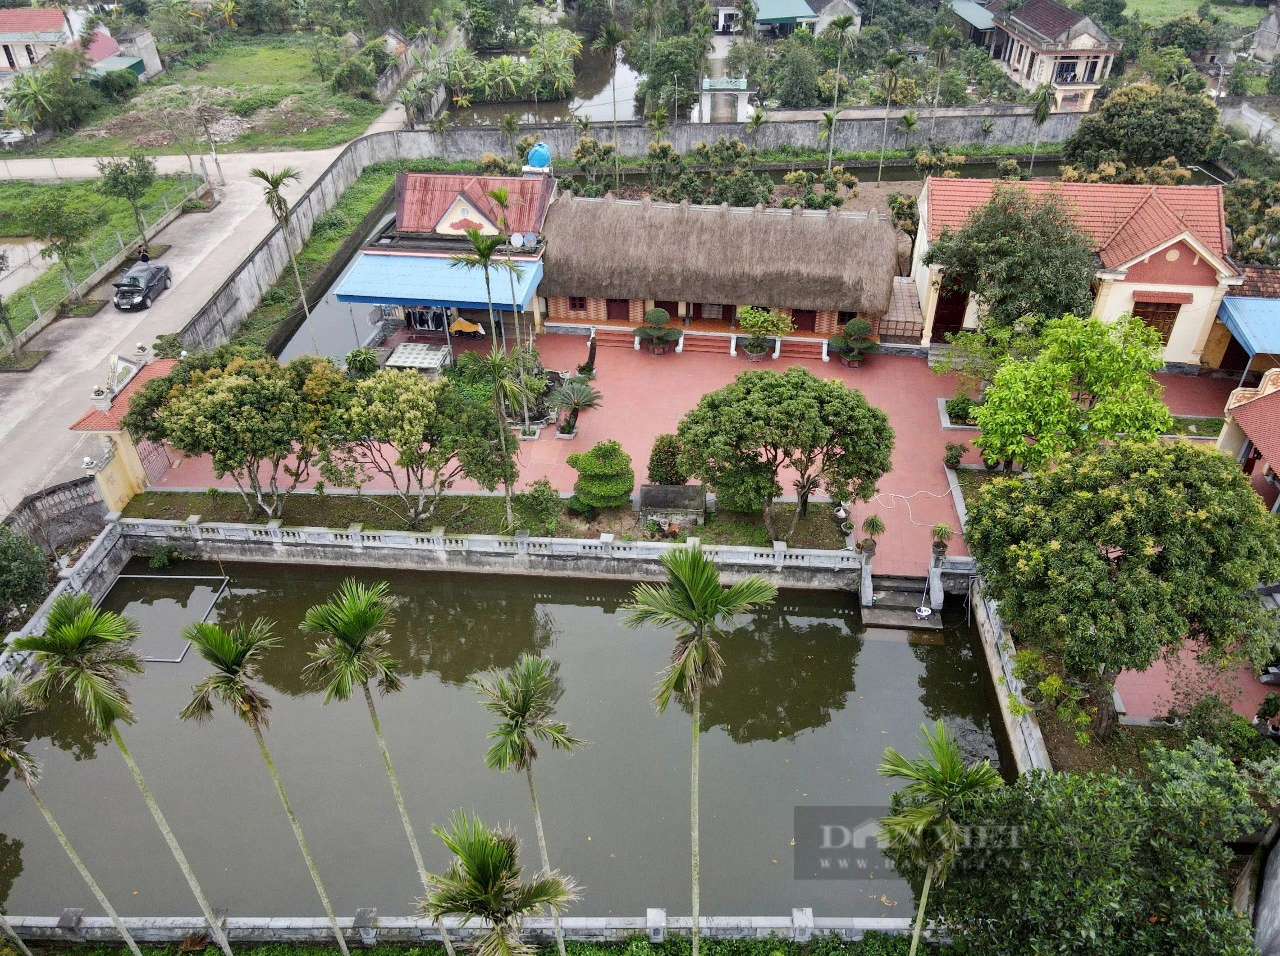 Ở một nơi của Ninh Bình, cảnh làng quê Việt Nam đẹp như phim, nhà mái bổi cổ xưa đã hơn 160 năm tuổi- Ảnh 3.